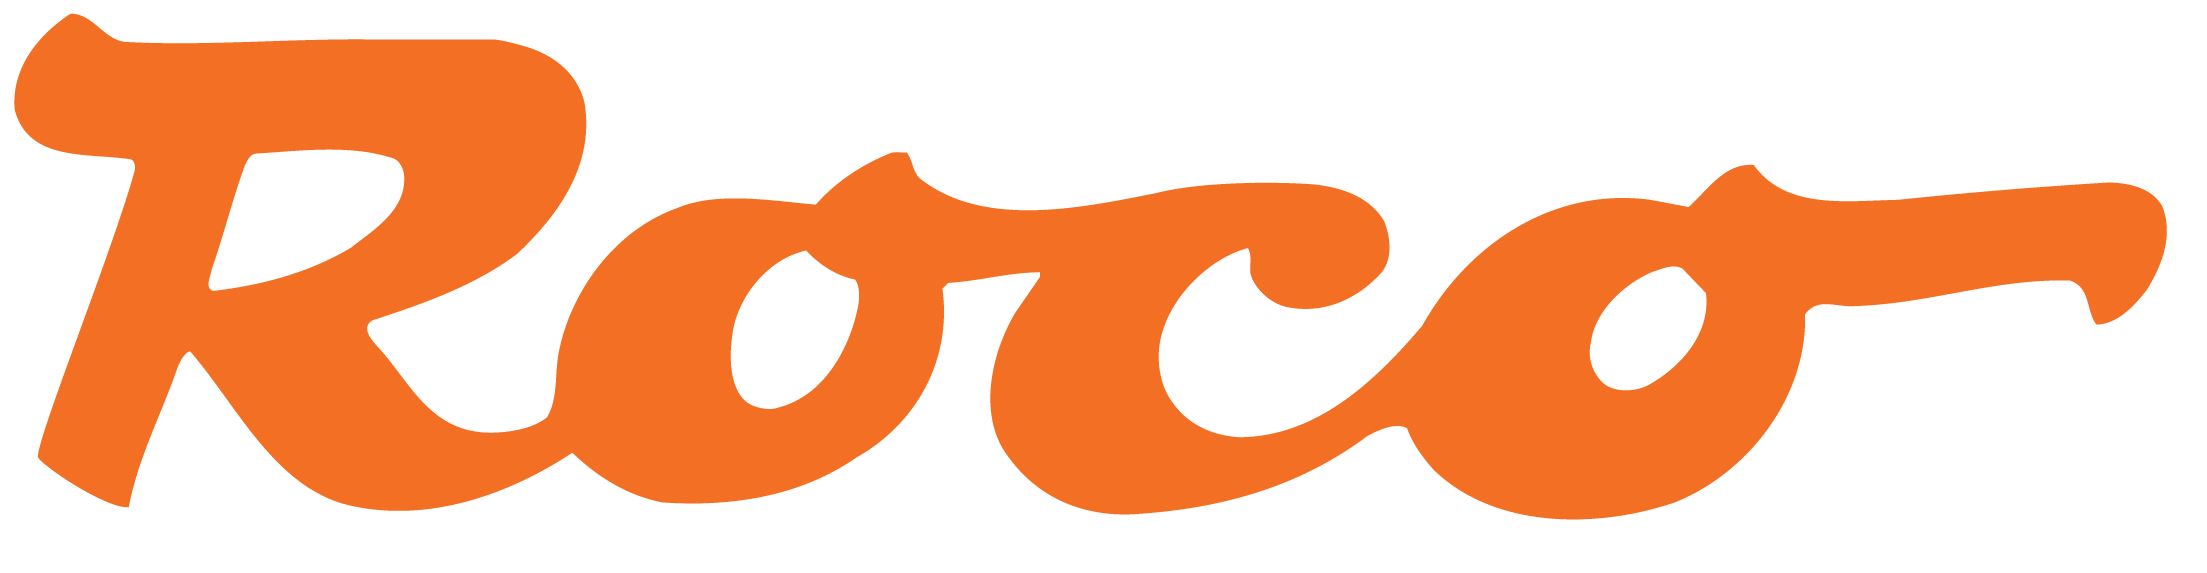 Roco Logo